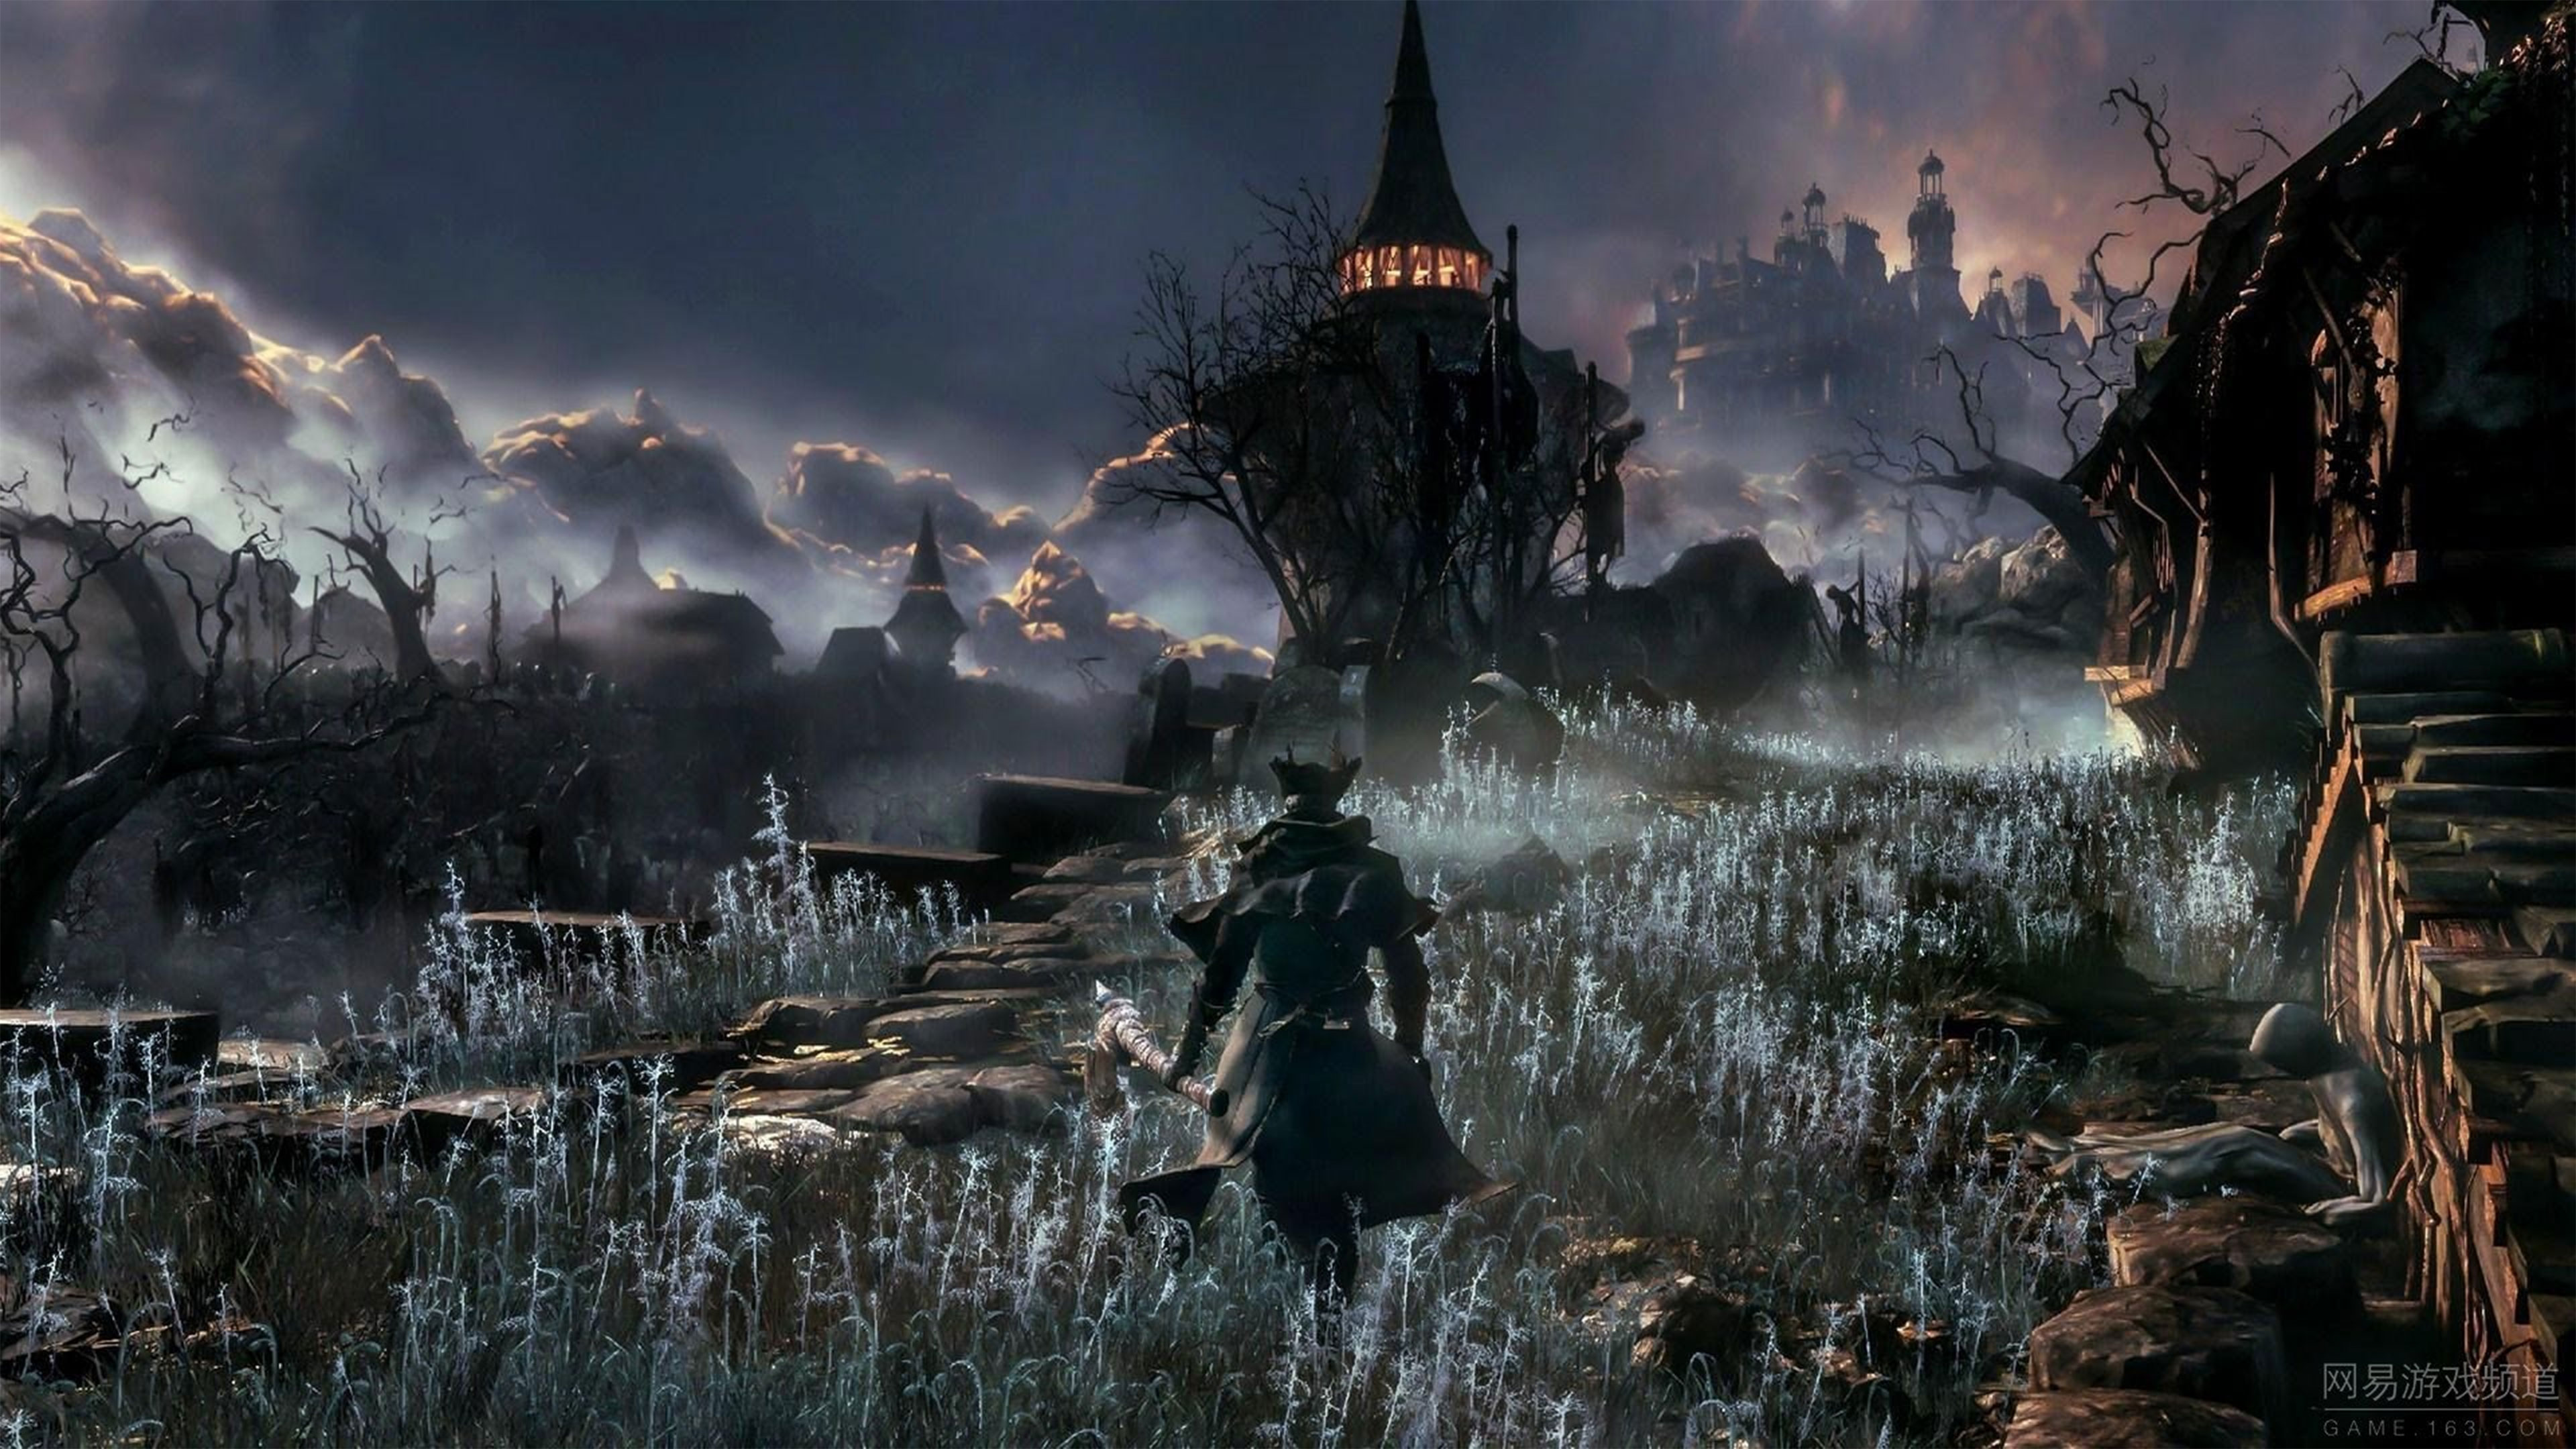 Dark Souls III Wallpapers in Ultra HD | 4K